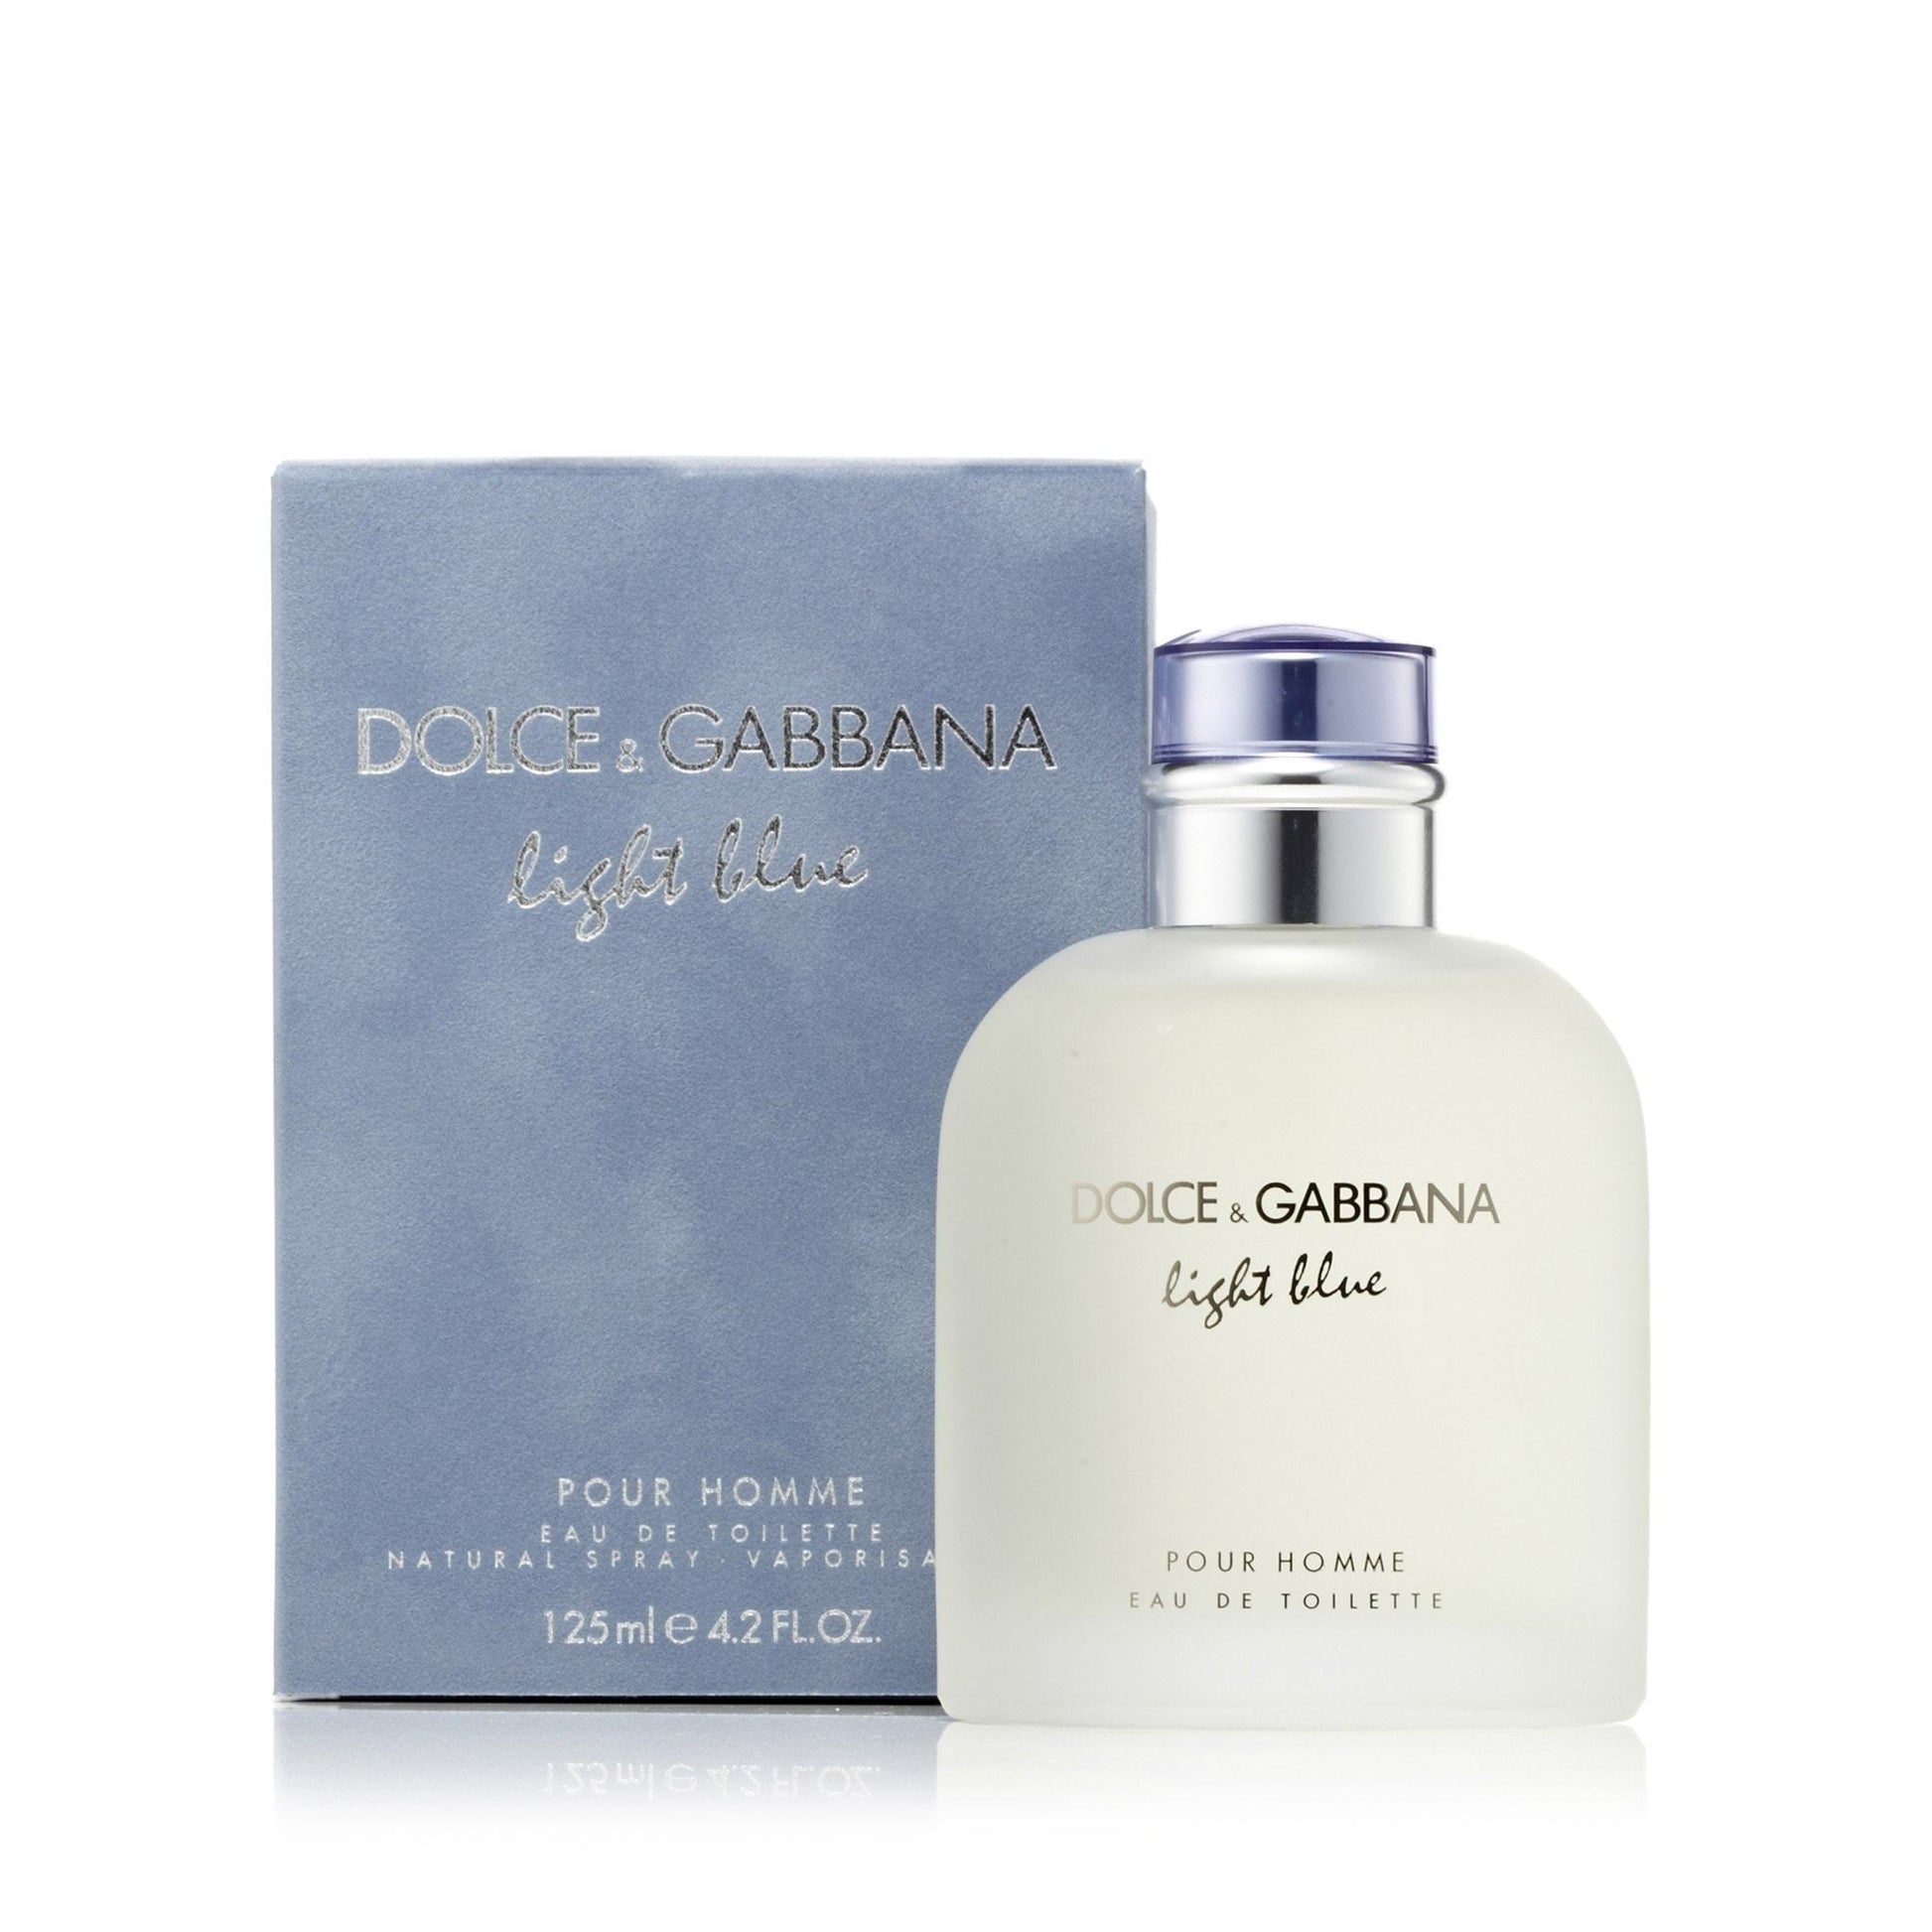 Dolce & Gabbana Light Blue Eau de Toilette, Cologne for Men, 4.2 Oz 